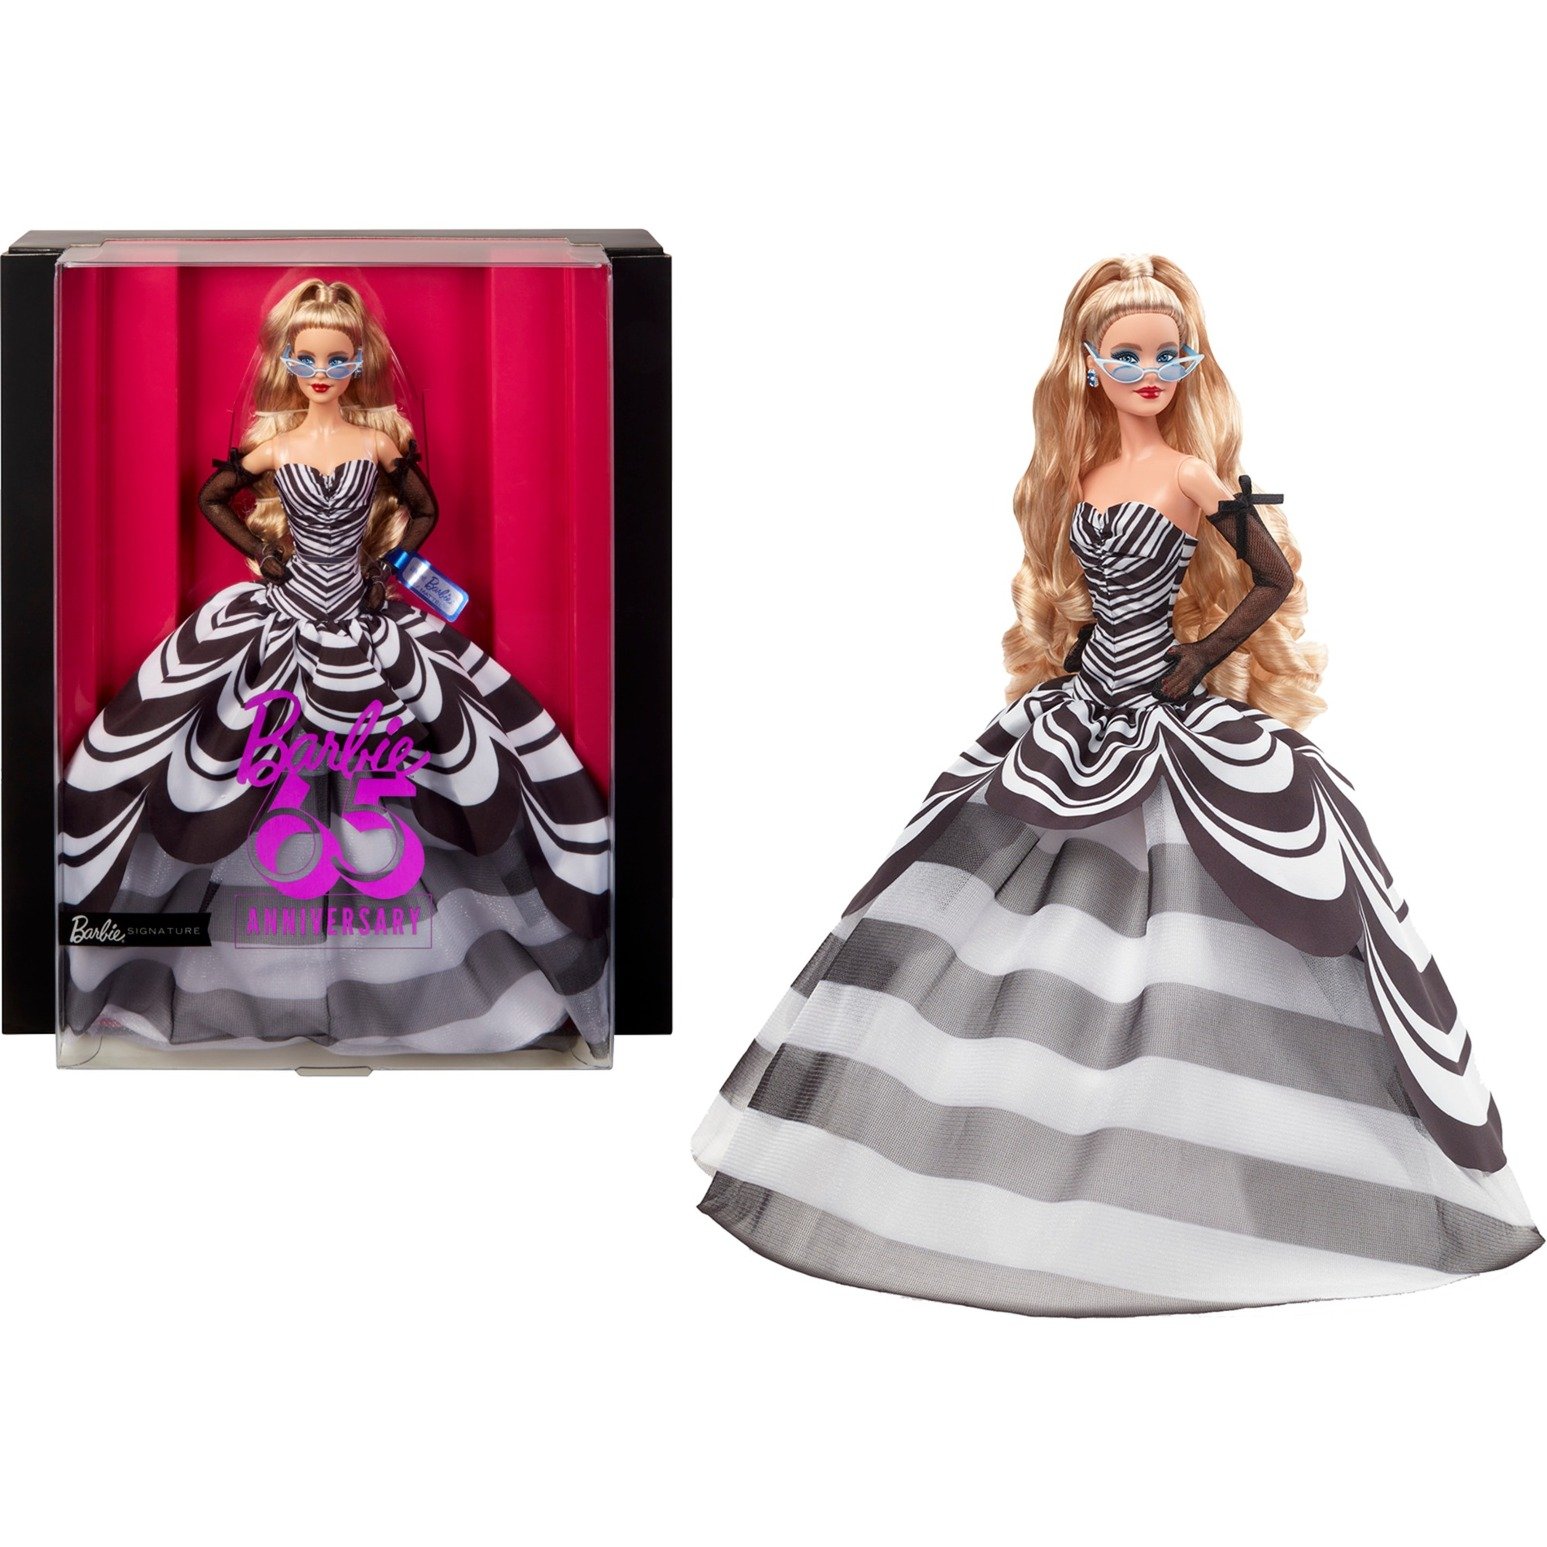 Barbie Signature Sammelpuppe zum 65. Jubiläum mit blonden Haaren und schwarz-weißer Robe von Mattel